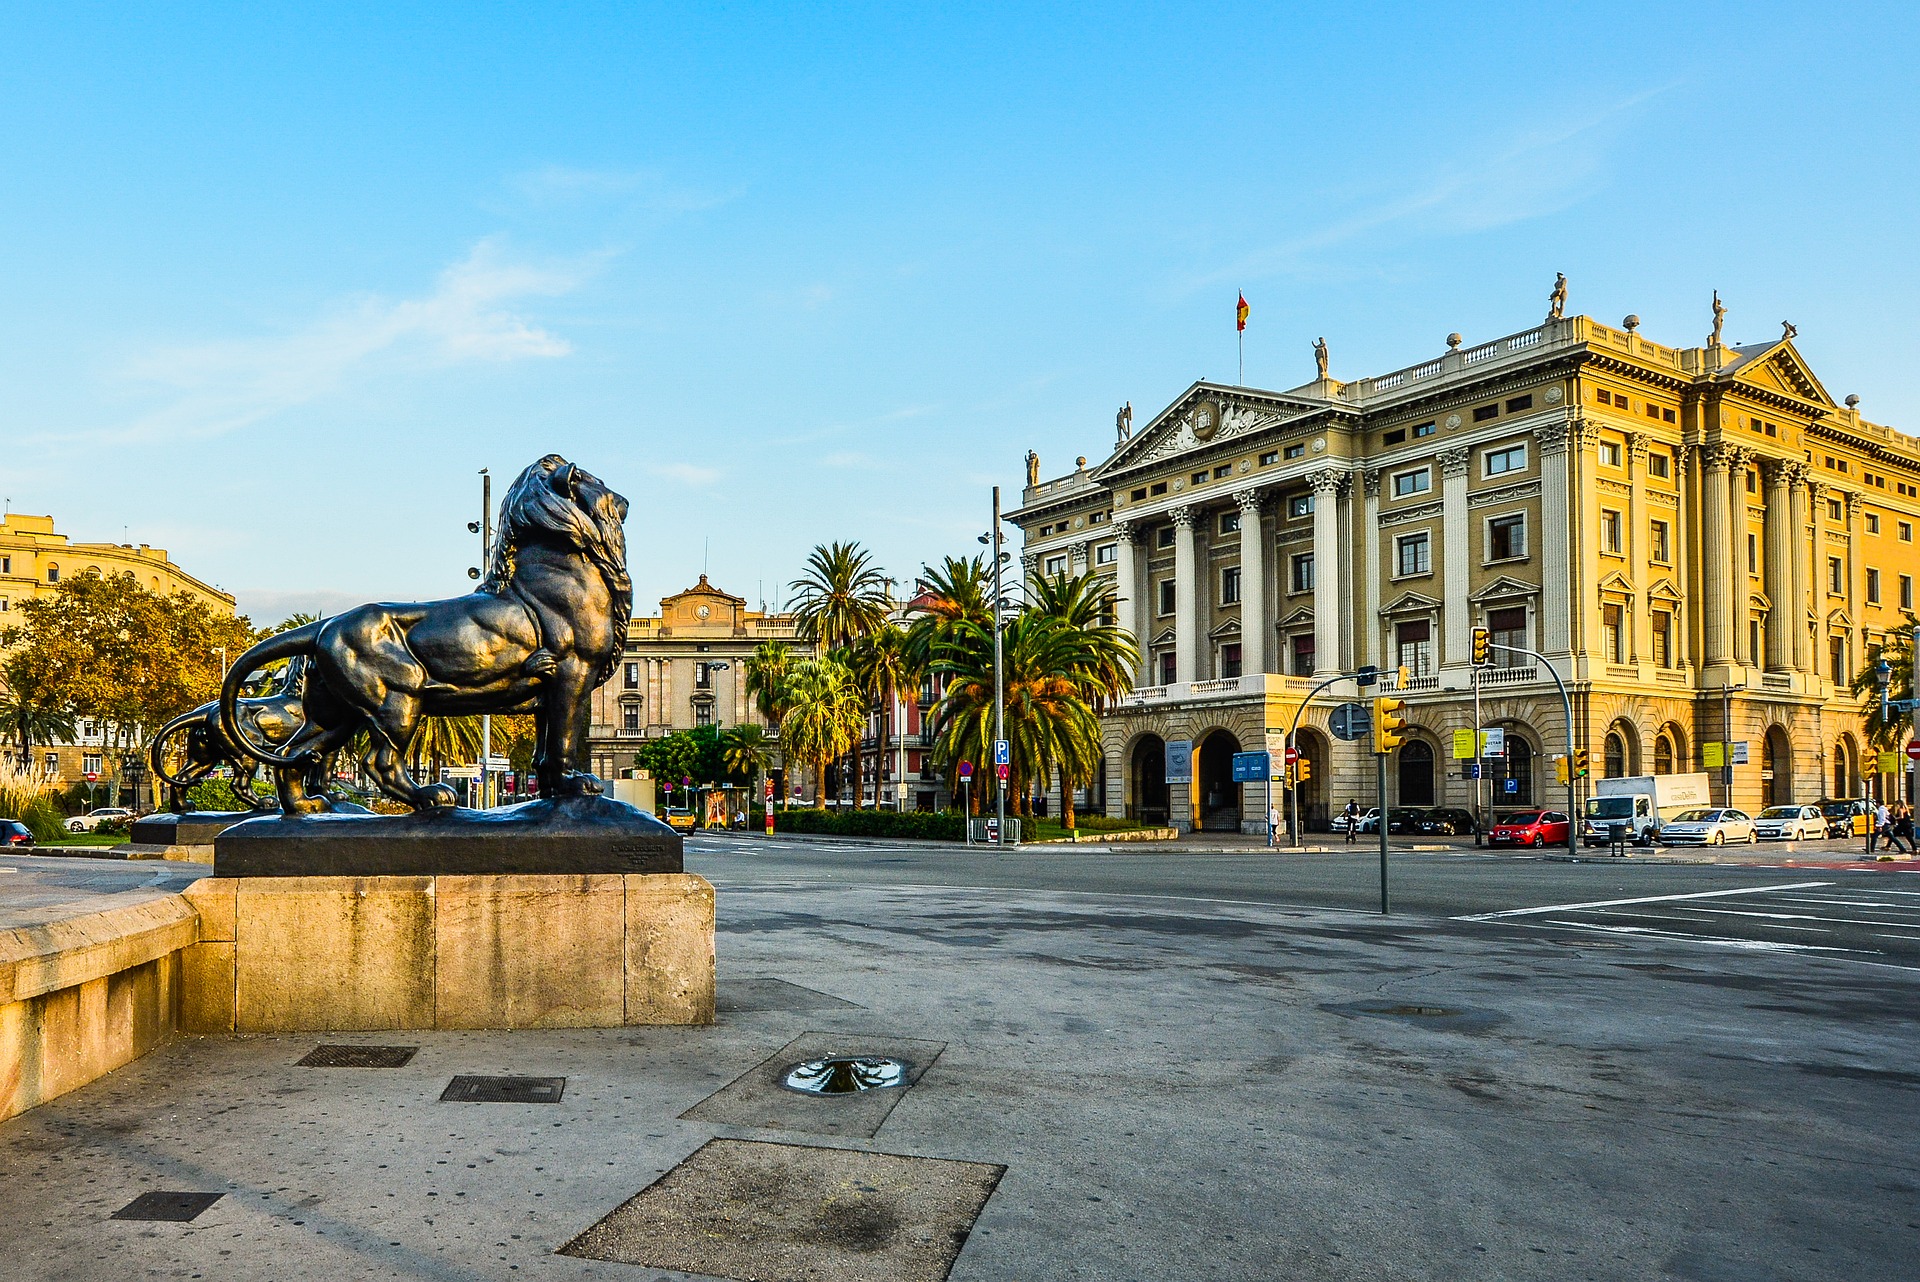 Lion statue in Barcelona, Spain